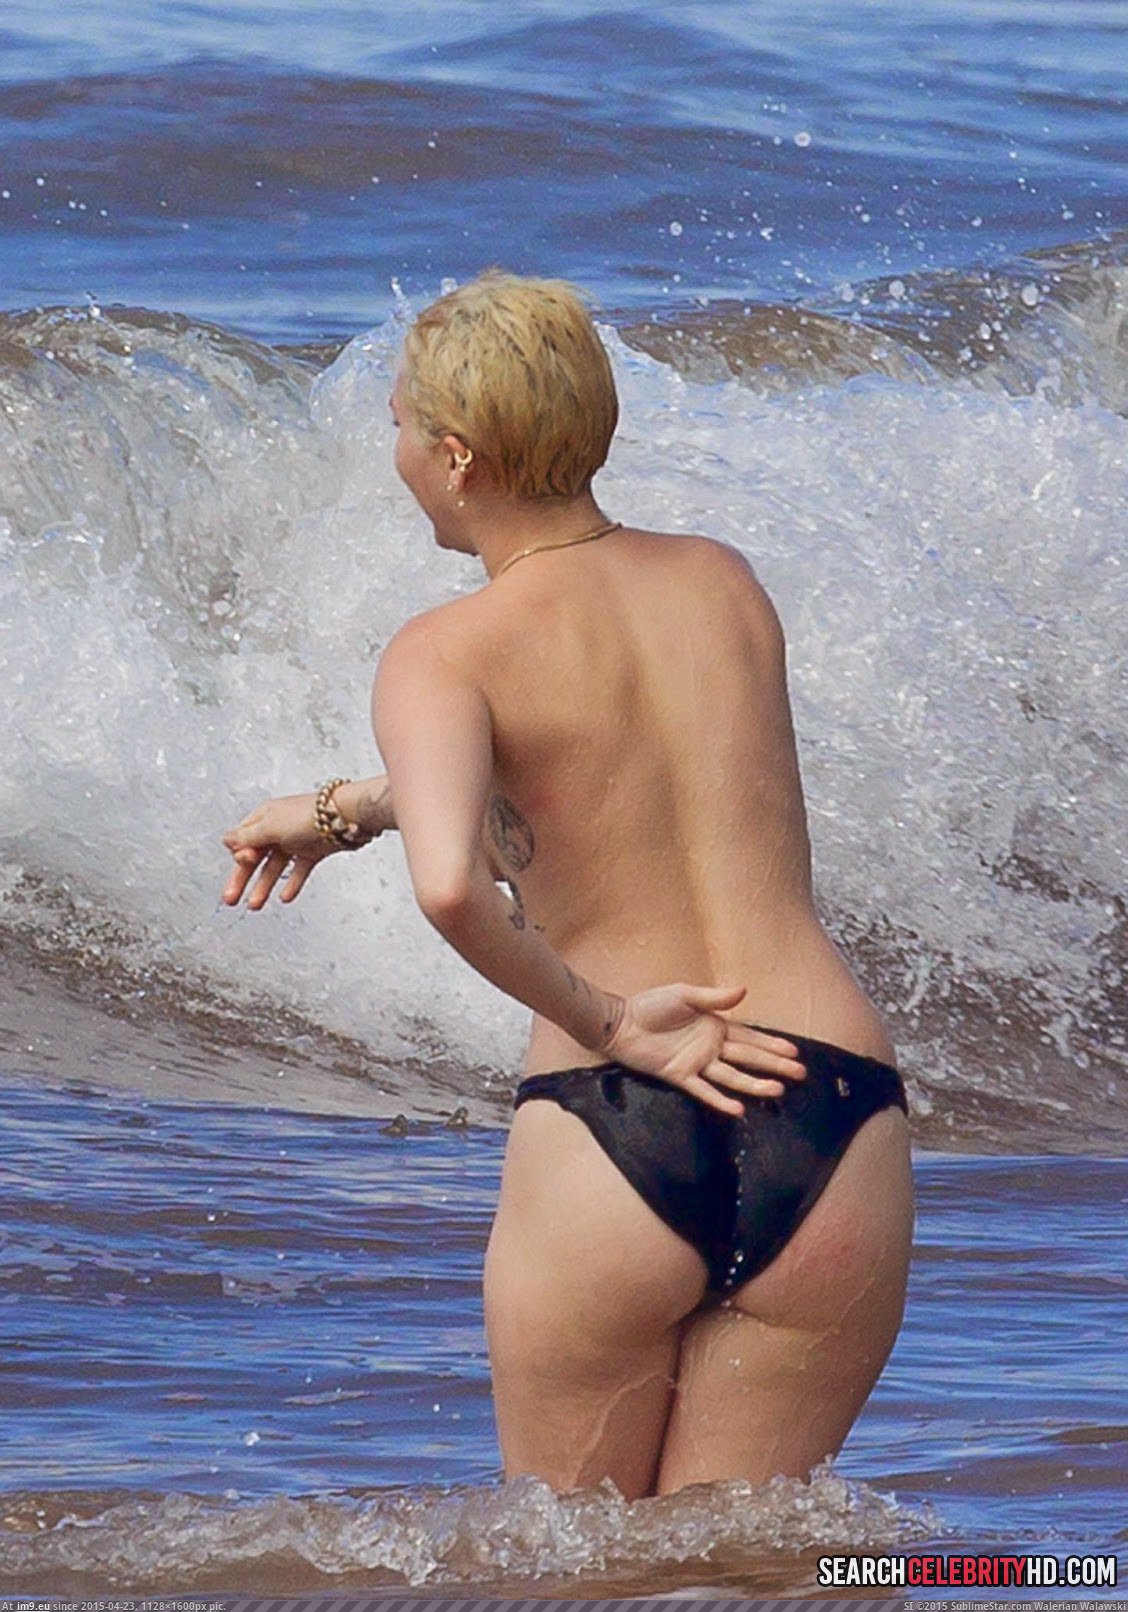 Miley Cyrus Topless Bikini Candid Photos In Hawaii (9) (in Miley Cyrus Topless Bikini Candid Photos In Hawaii)